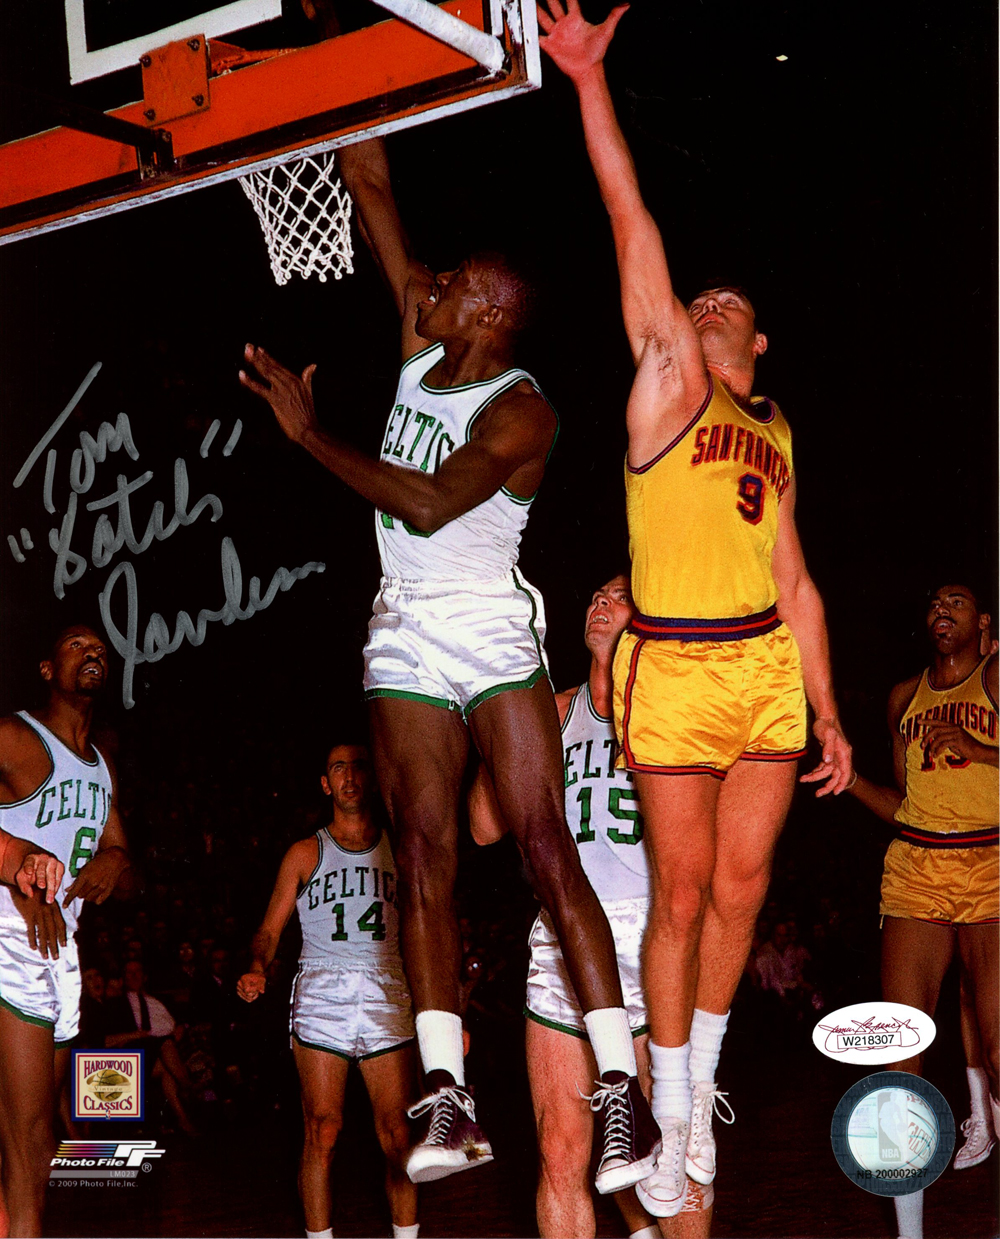 Tom Satch Sanders Autographed/Signed Boston Celtics 8x10 Photo JSA